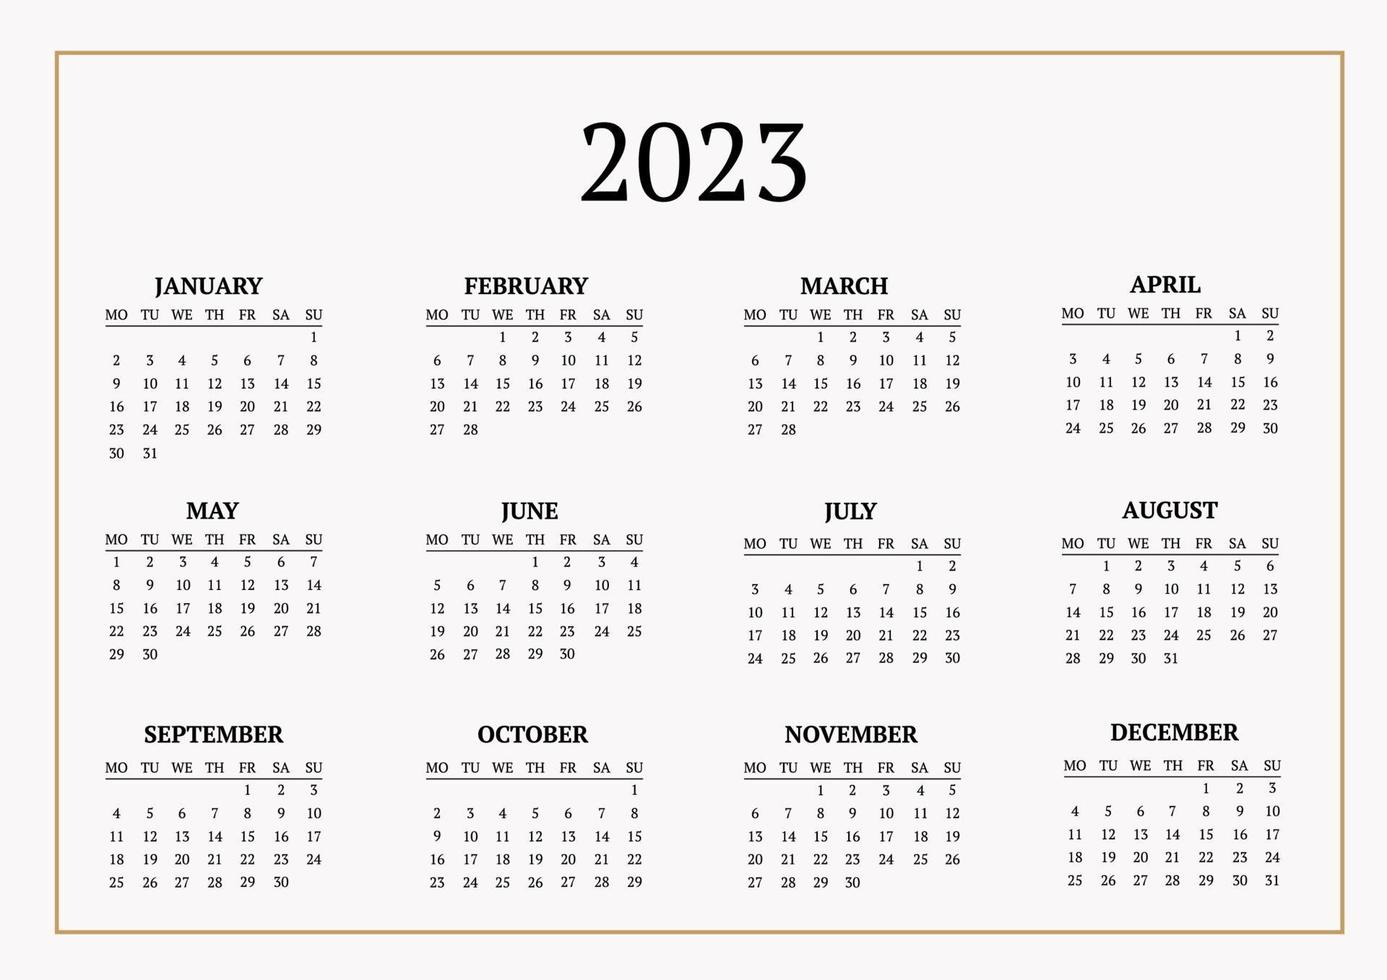 klassisk månadskalender för 2023. en kalender i stil med minimalism av en fyrkantig form. kalendermall vektor